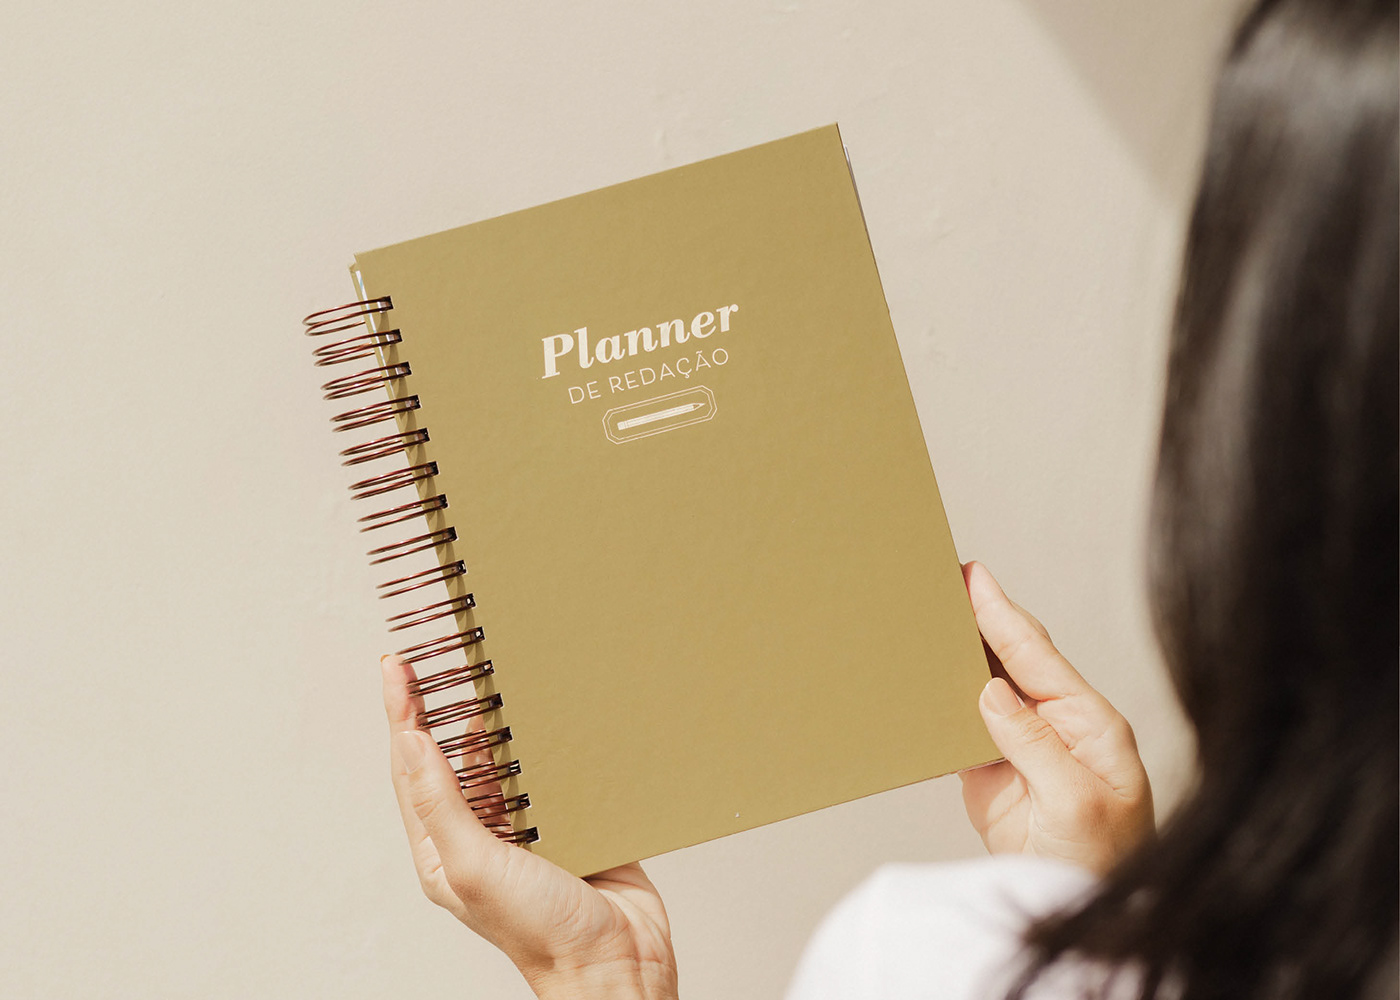 planner graphic design  product design  design design produto ebook cover design Capa unboxing visual identity